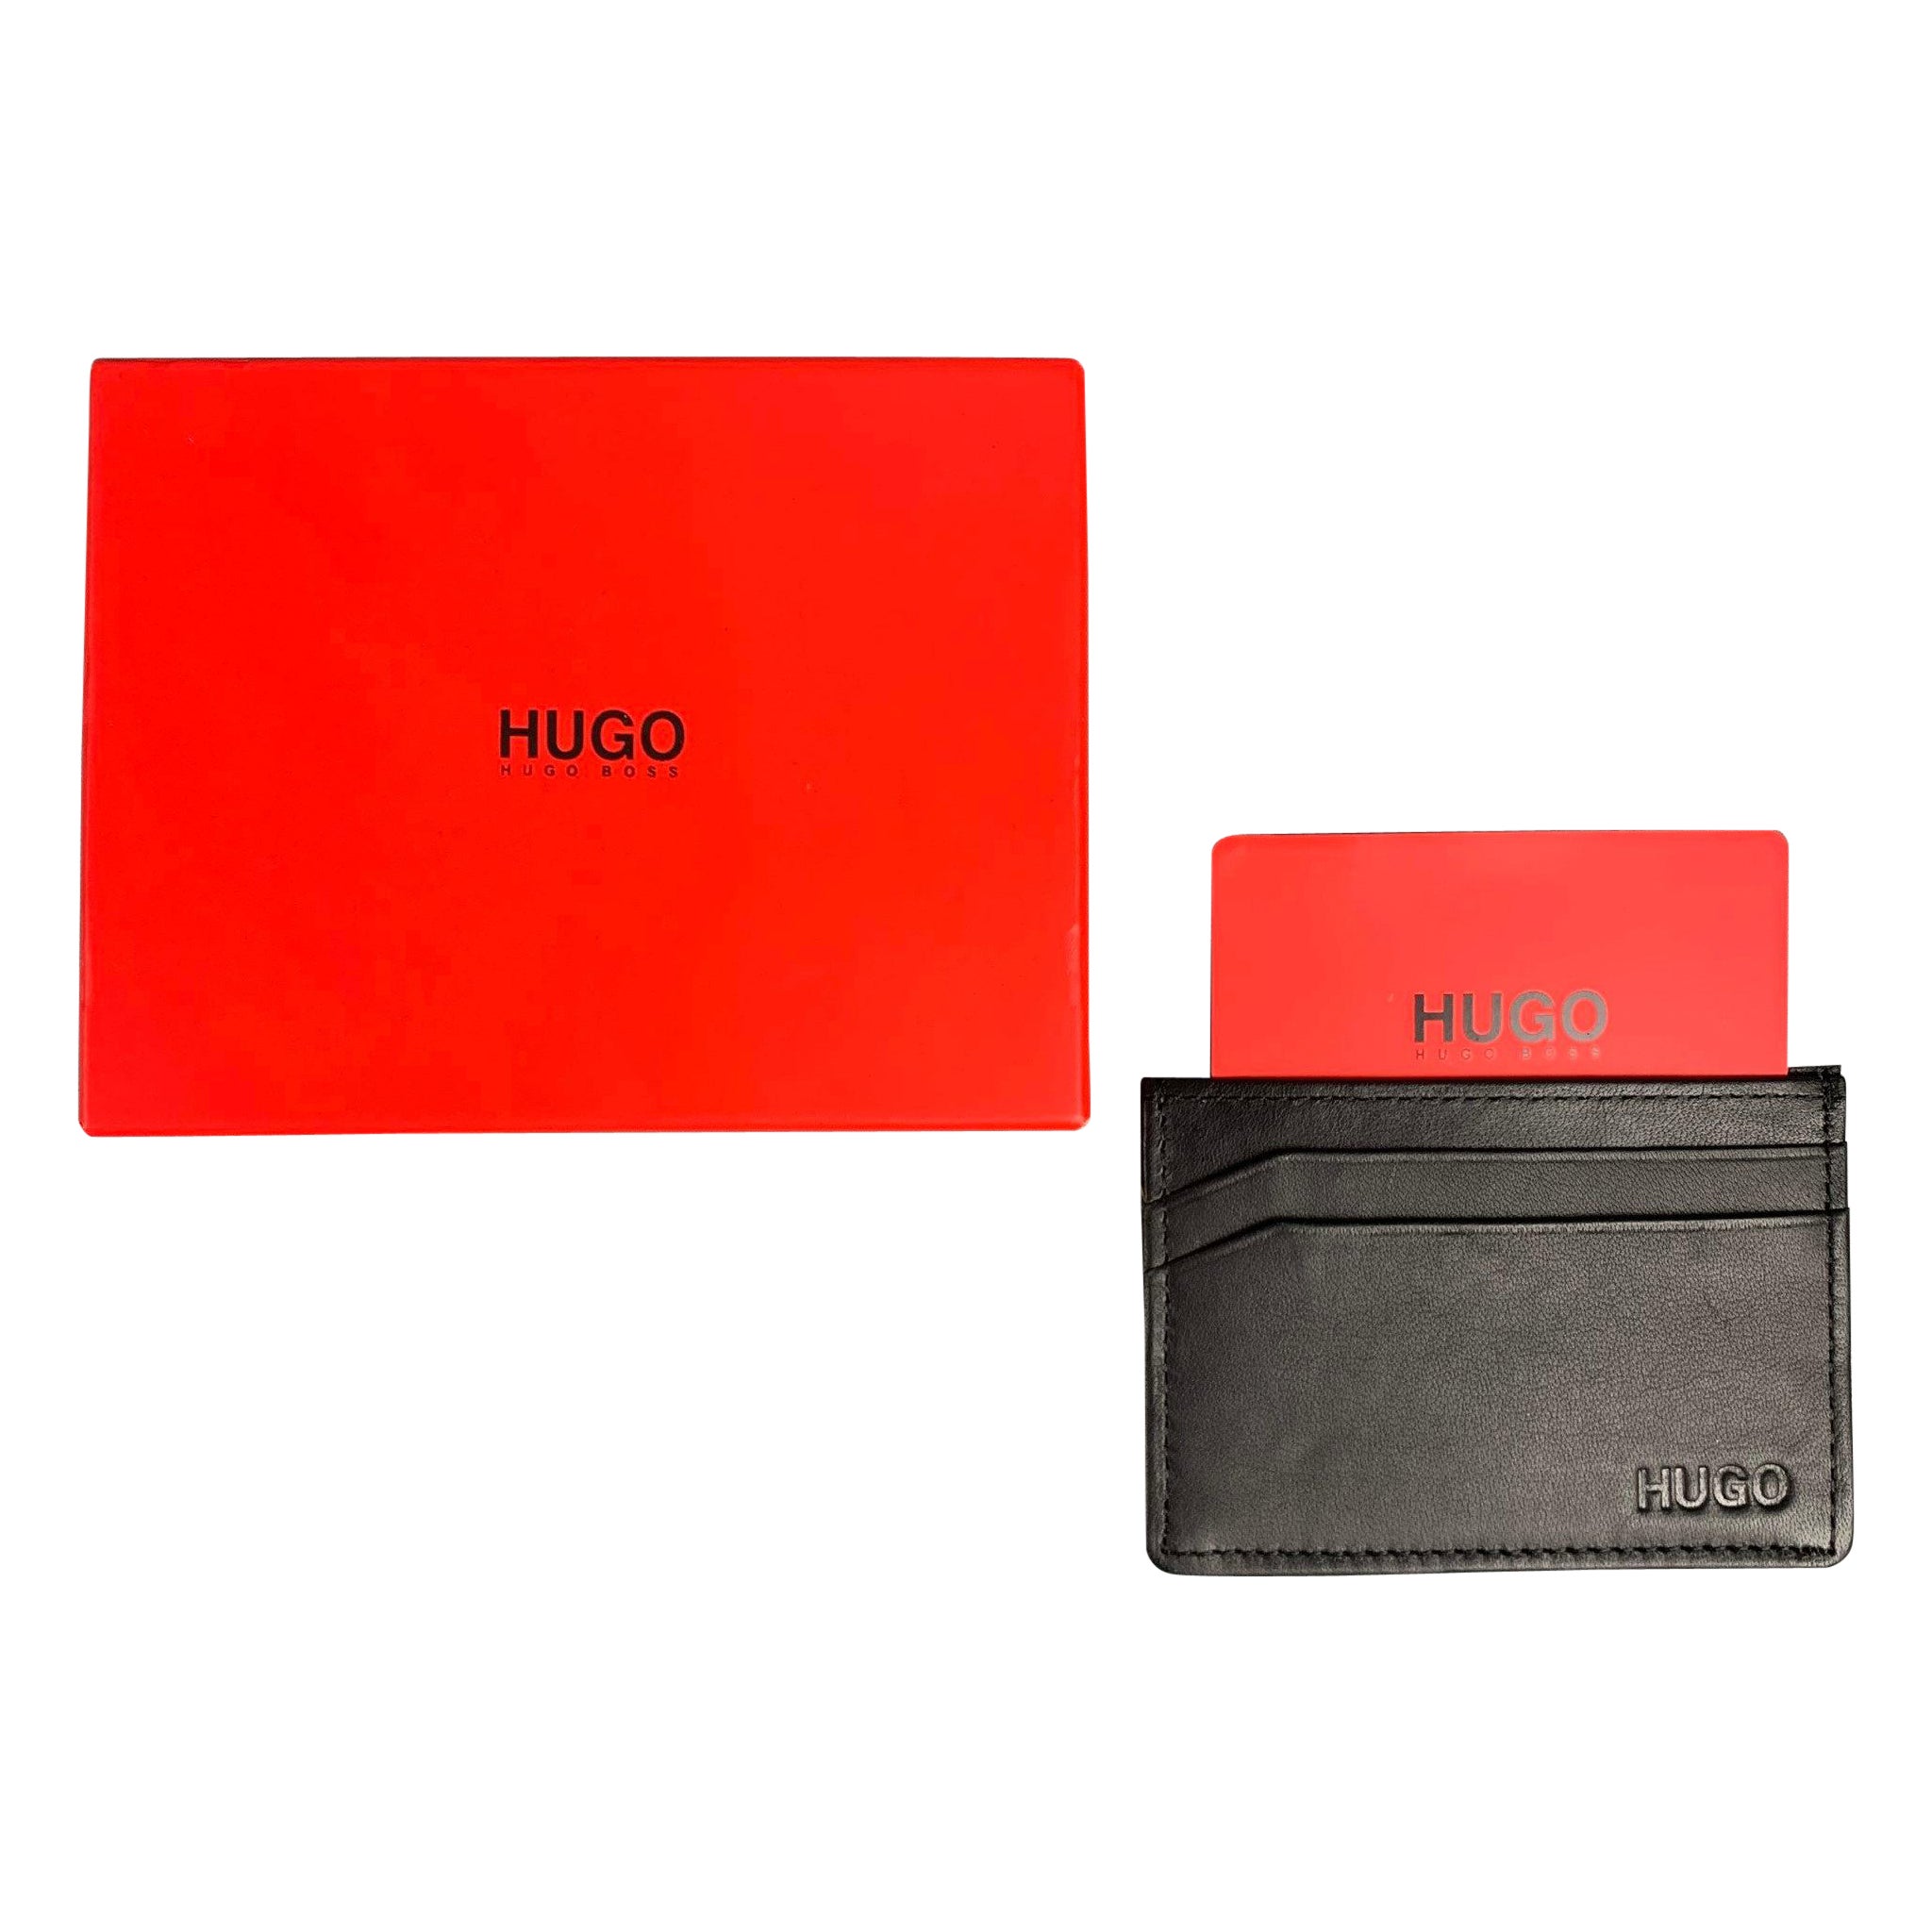 HUGO BOSS Black Leather Wallet For Sale